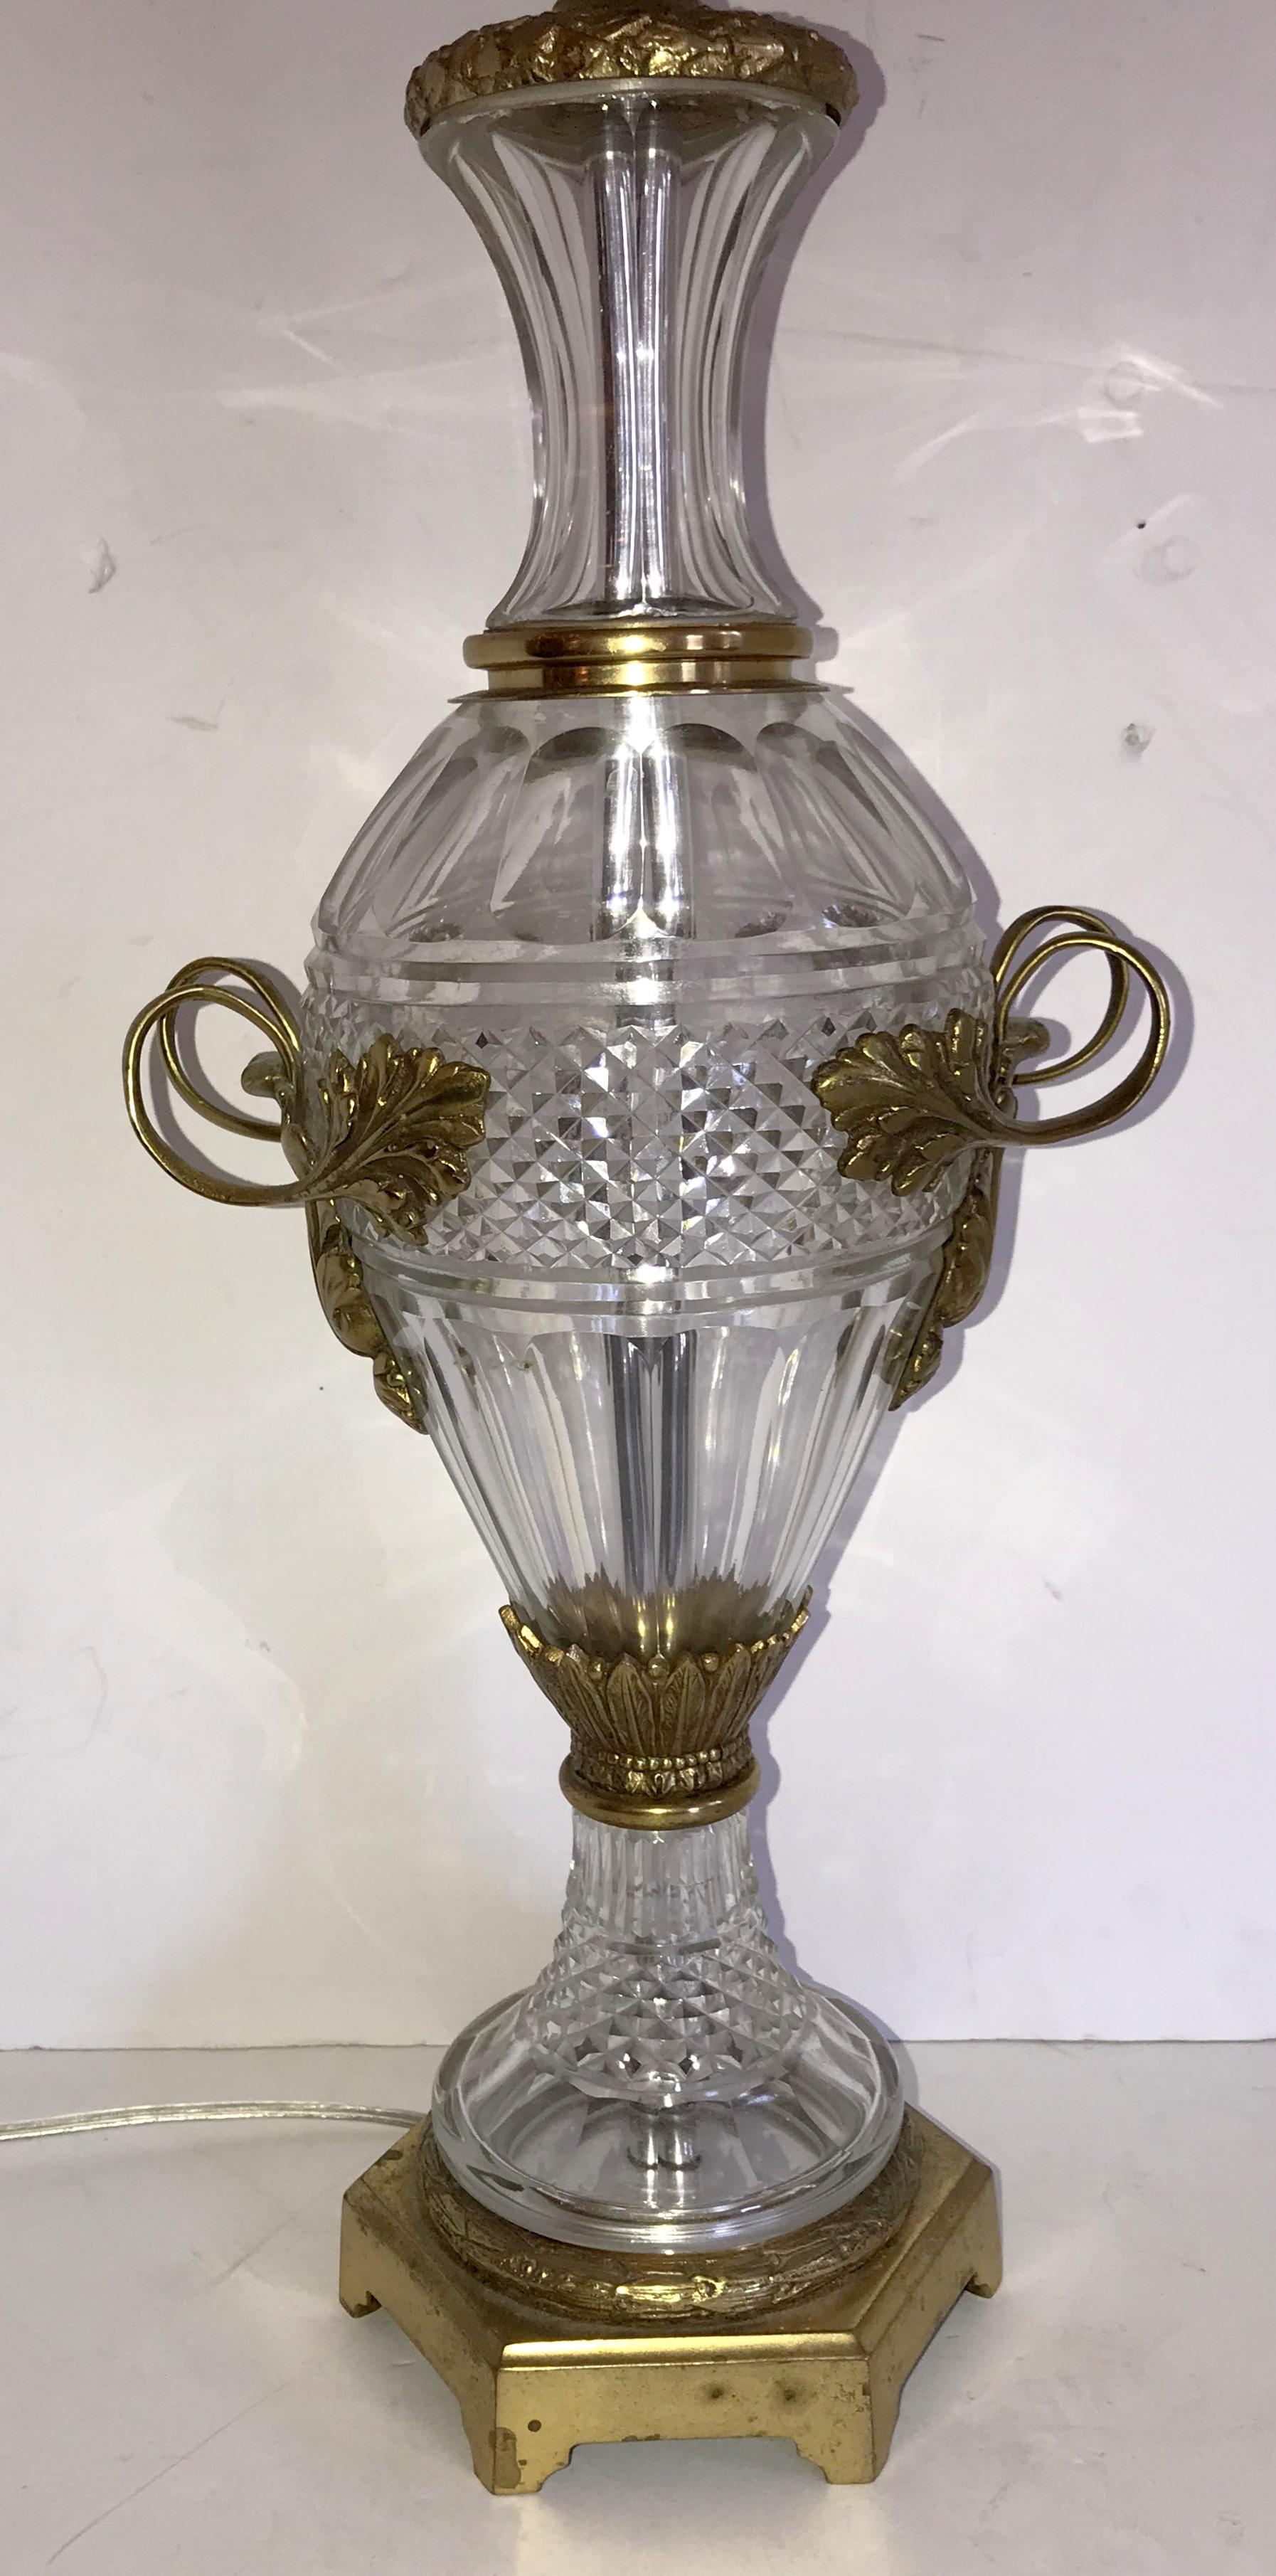 Belle paire de lampes françaises en cristal taillé en forme d'urne et montées en bronze doré. Les poignées décorées de feuilles ainsi que le piédestal et la coupe de la base ont de merveilleux détails en bronze, et ont été recâblées avec deux